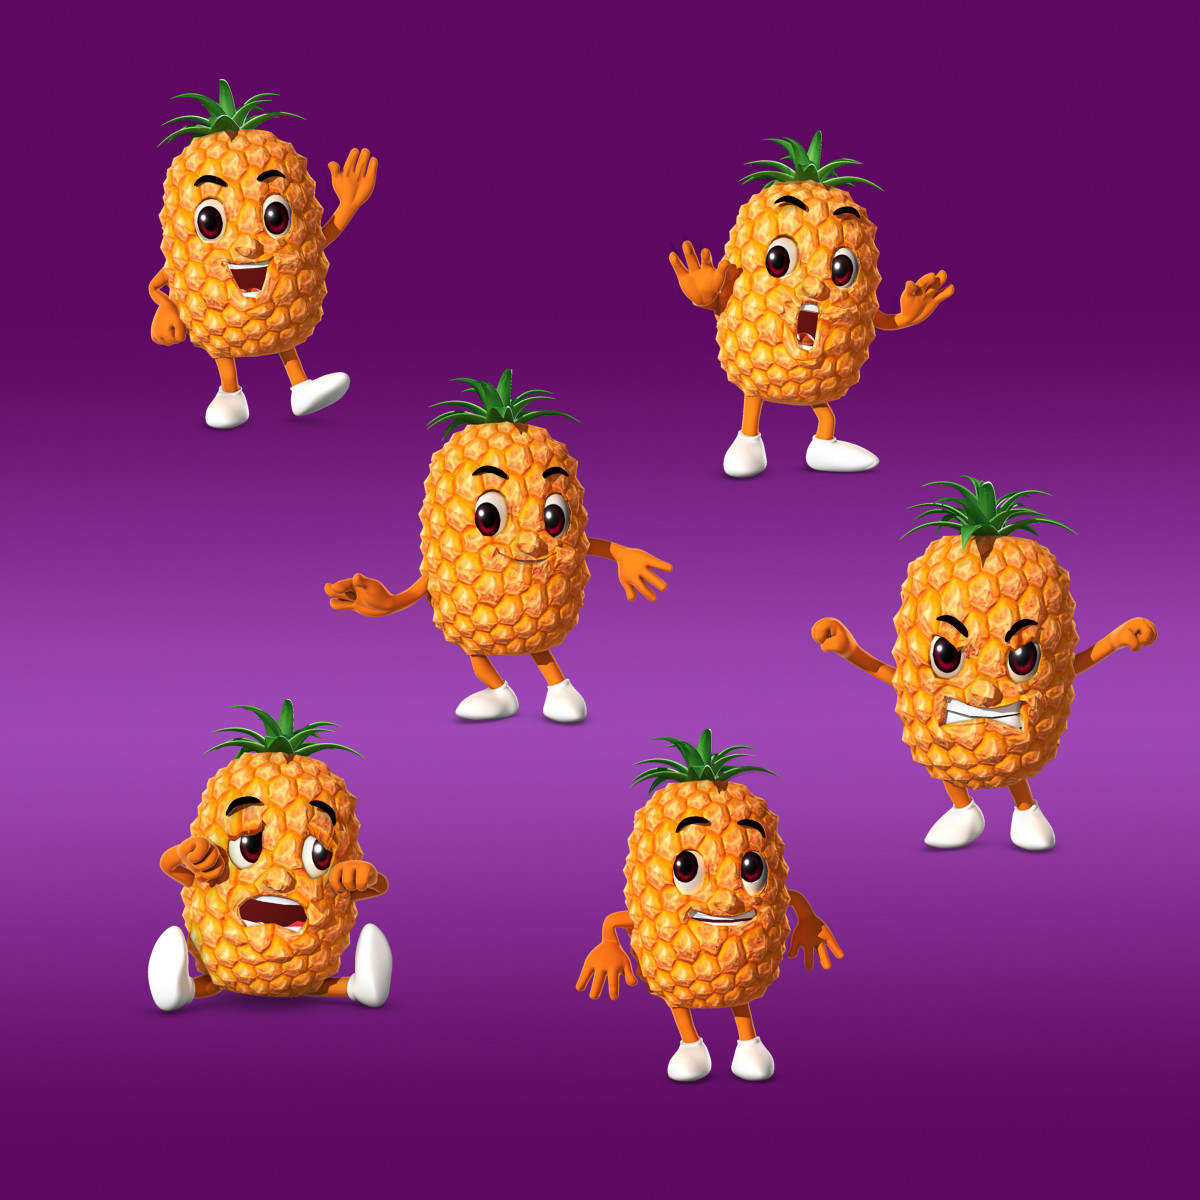 ArtStation - Pixel fruits